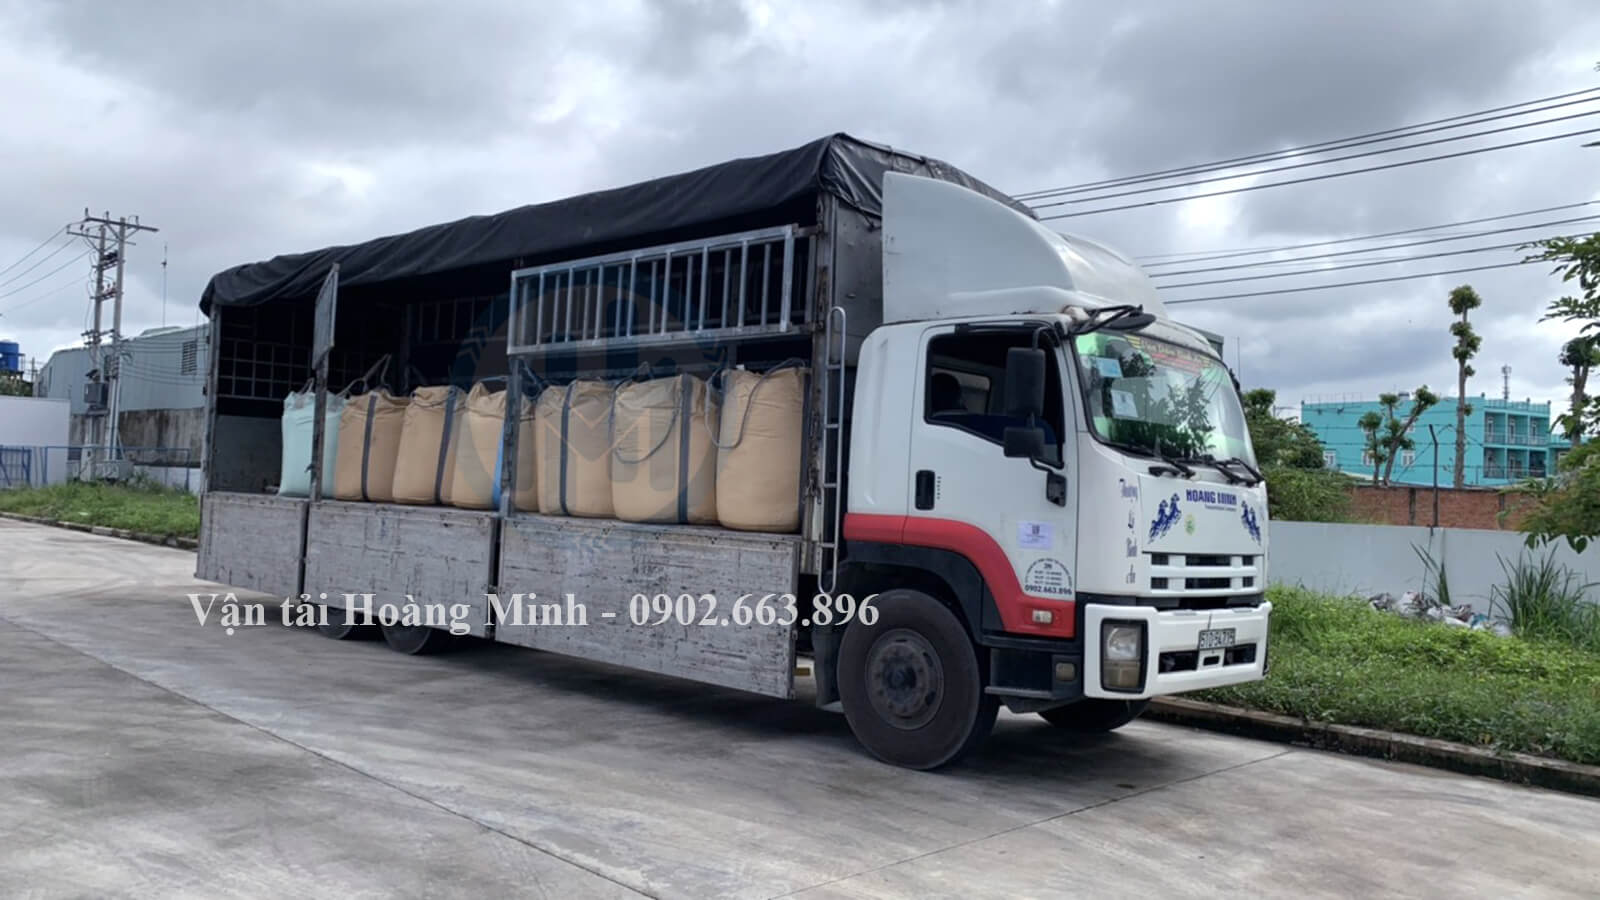 Xe tải Hoàng Minh chở hàng thức ăn chăn nuôi cho khách hàng tại khu vực Sóc Trăng đi Long An.jpg